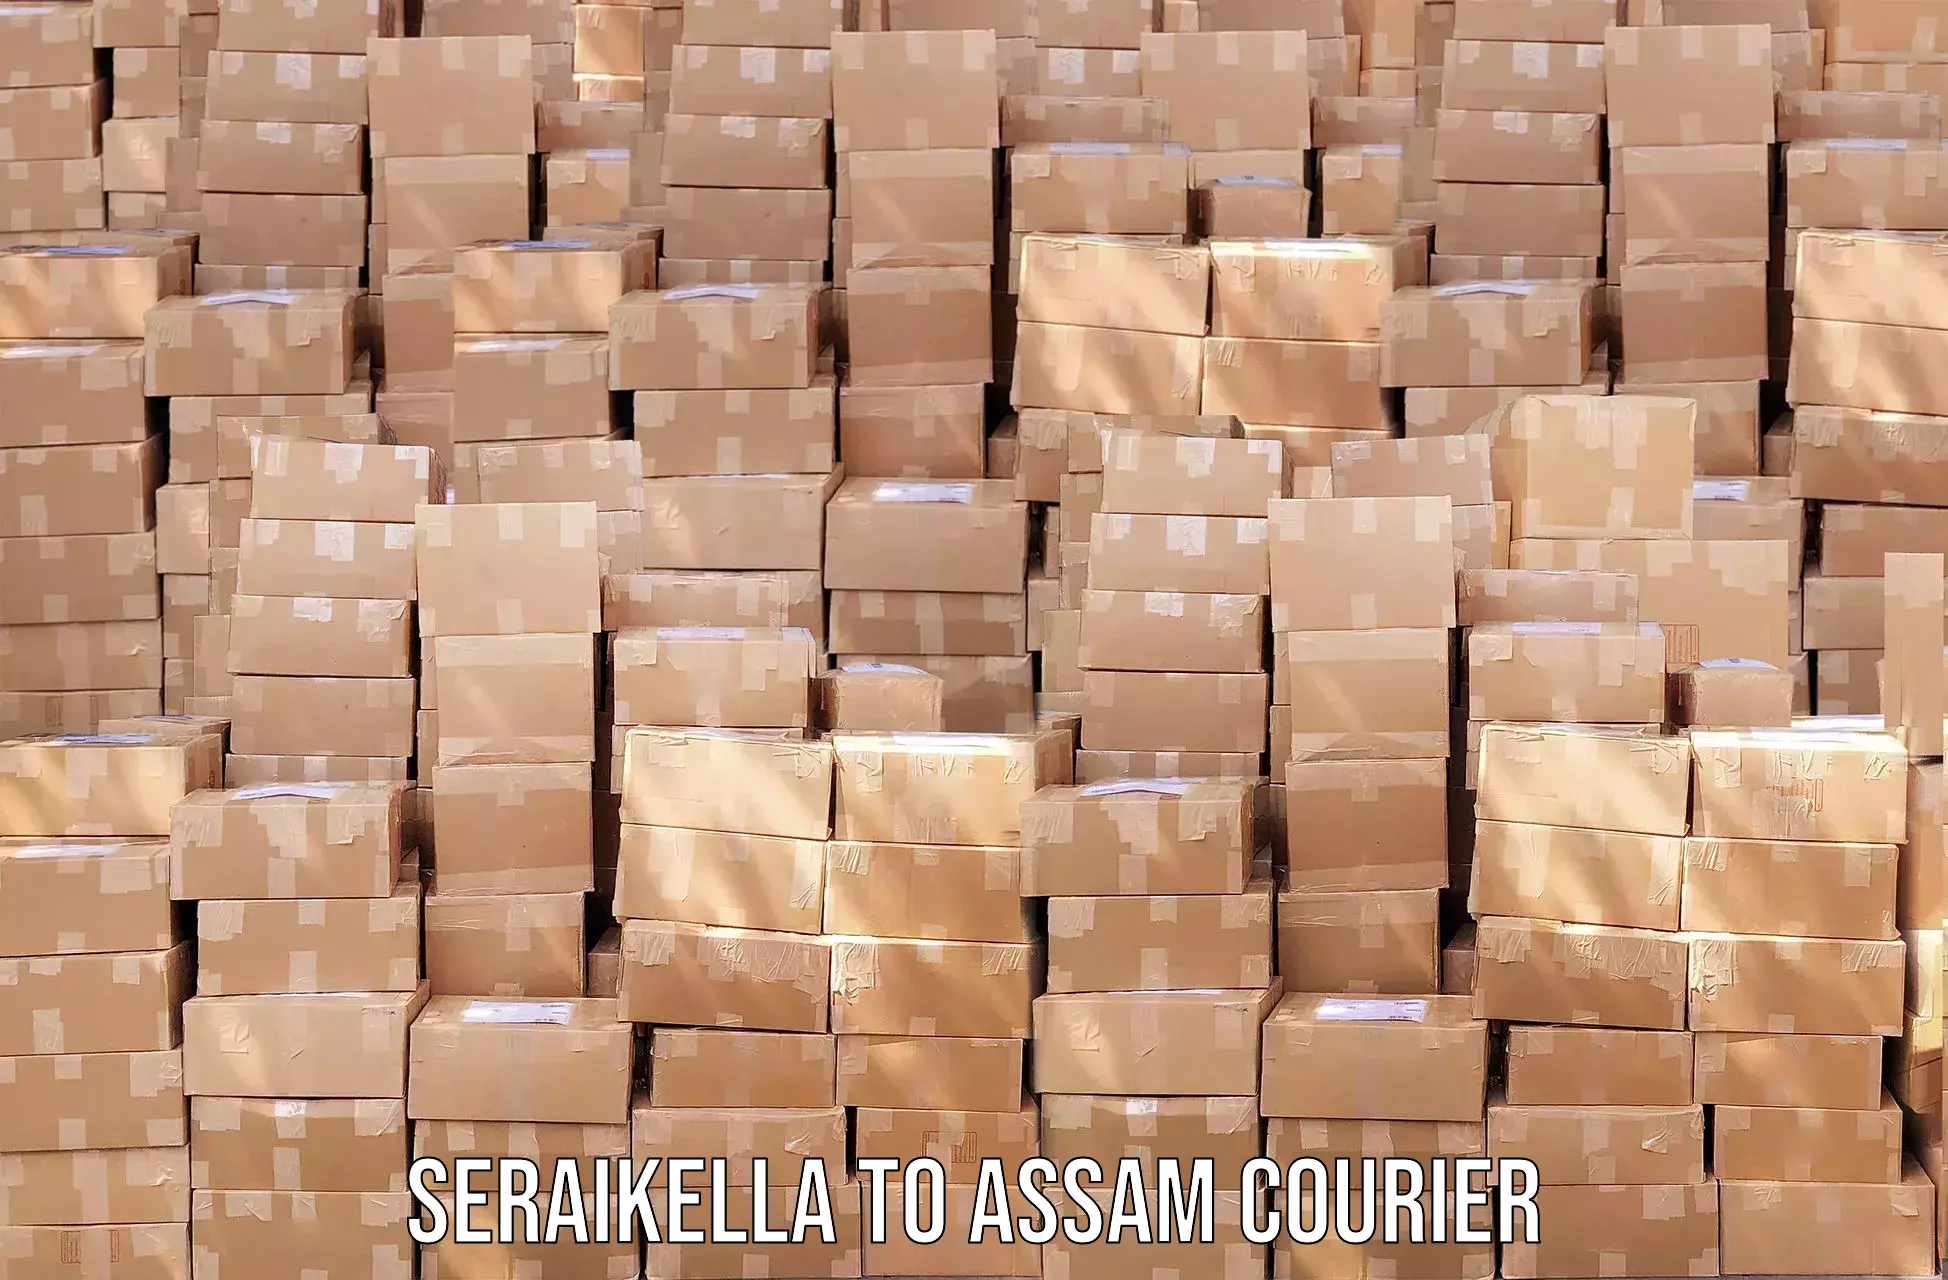 High-speed parcel service Seraikella to Jonai